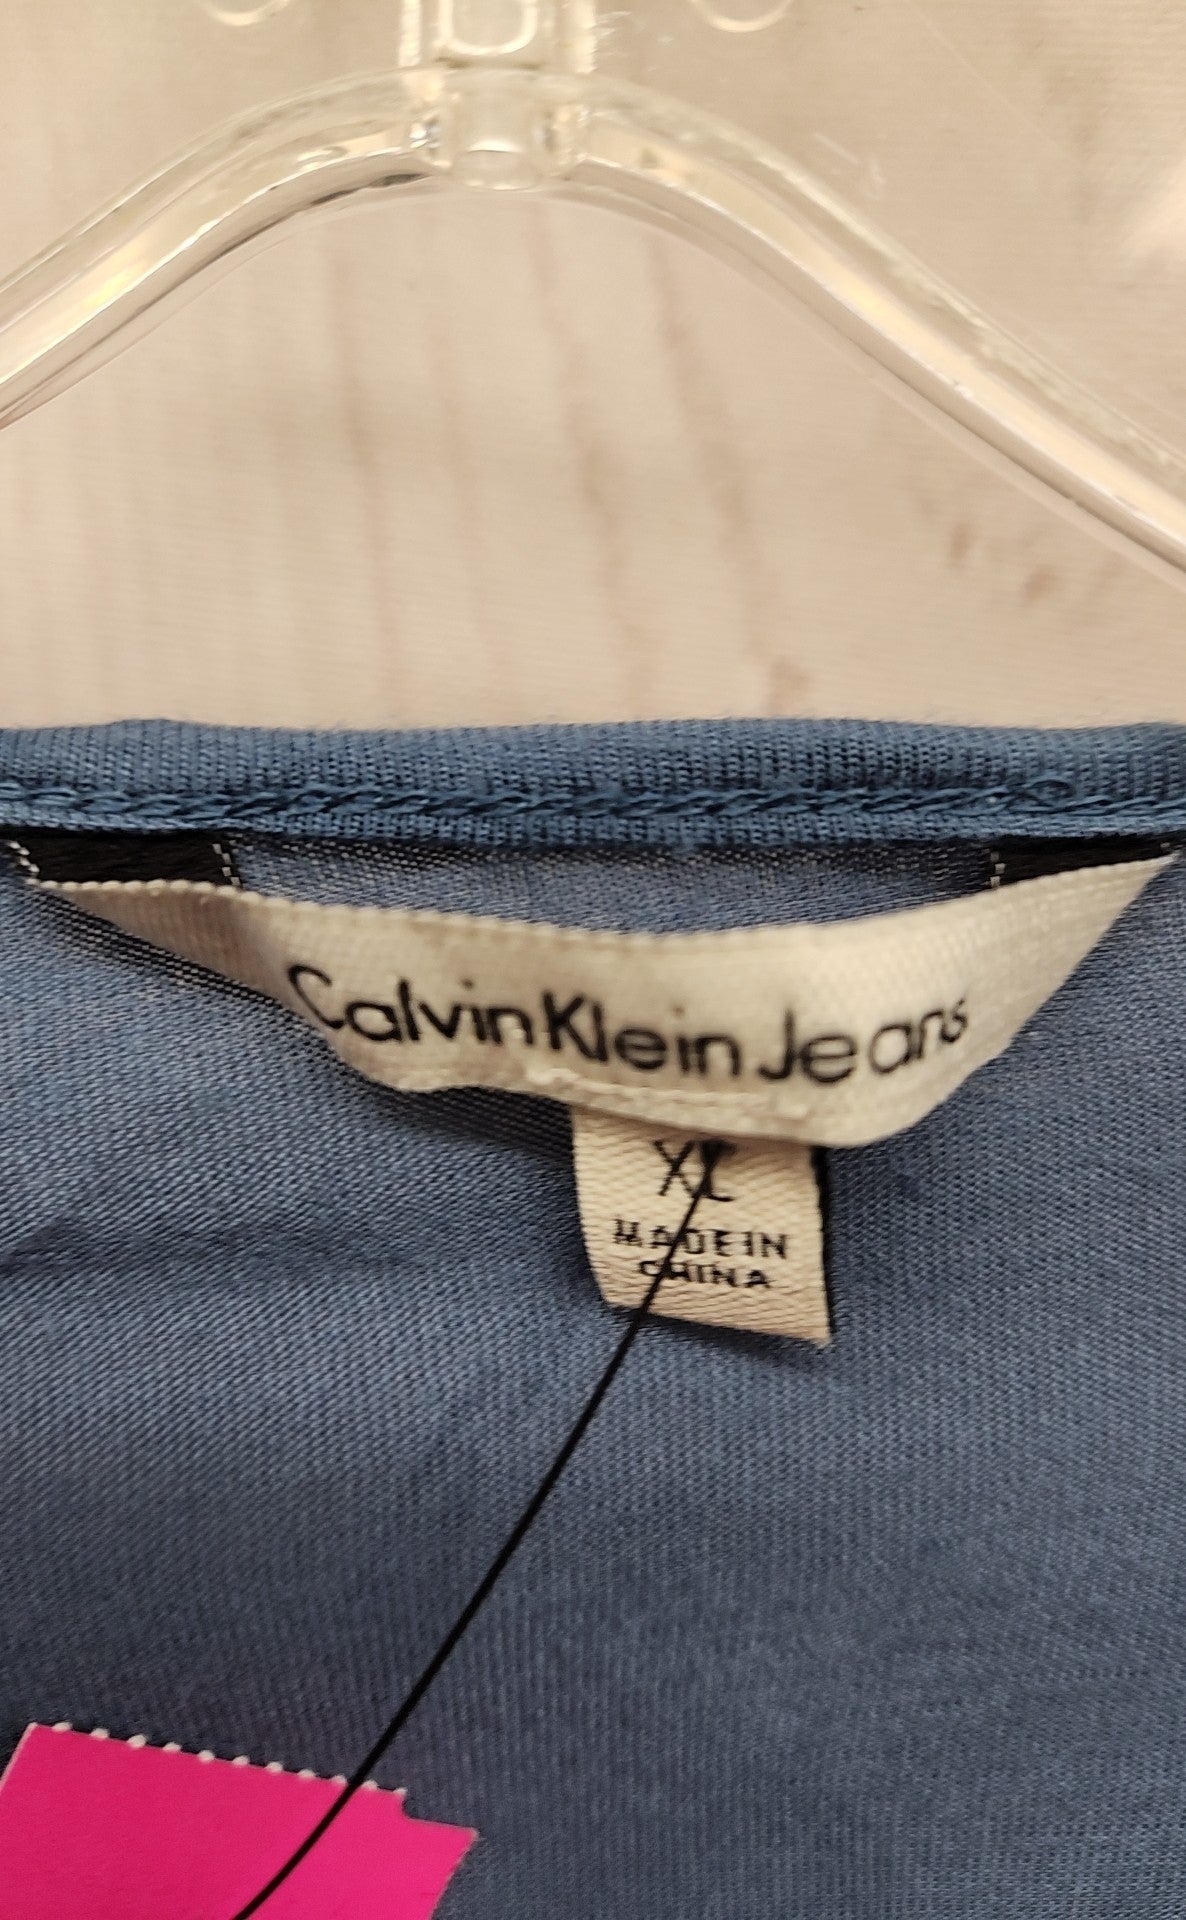 Calvin Klein Women's Size XL Blue Short Sleeve Top